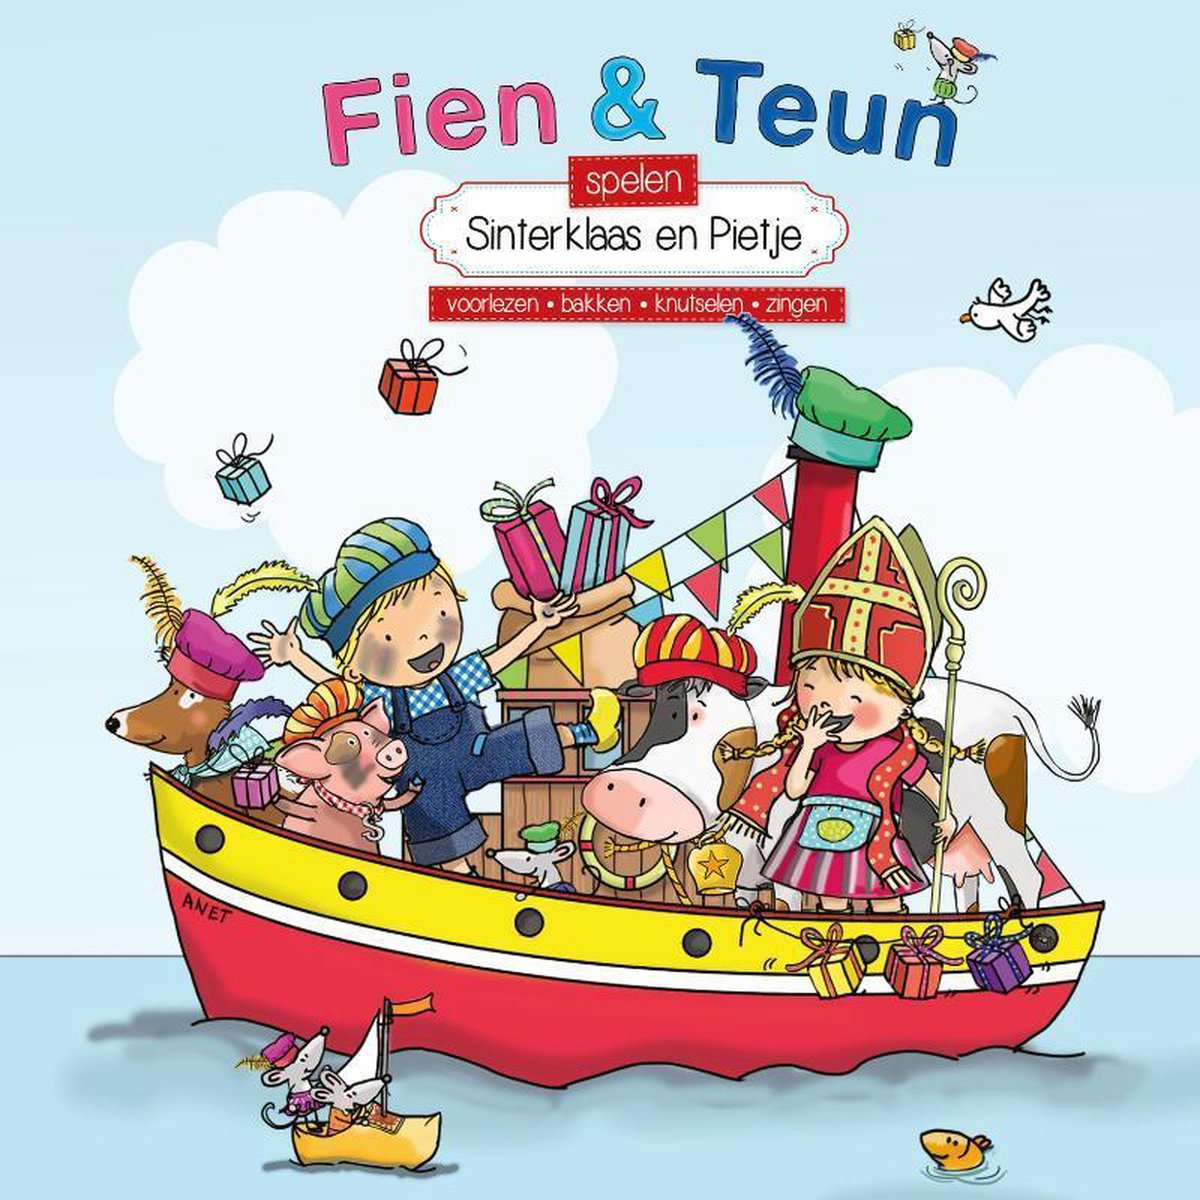 Fien & Teun spelen Sinterklaas en Pietje - voorlezen, bakken, knutselen, zingen